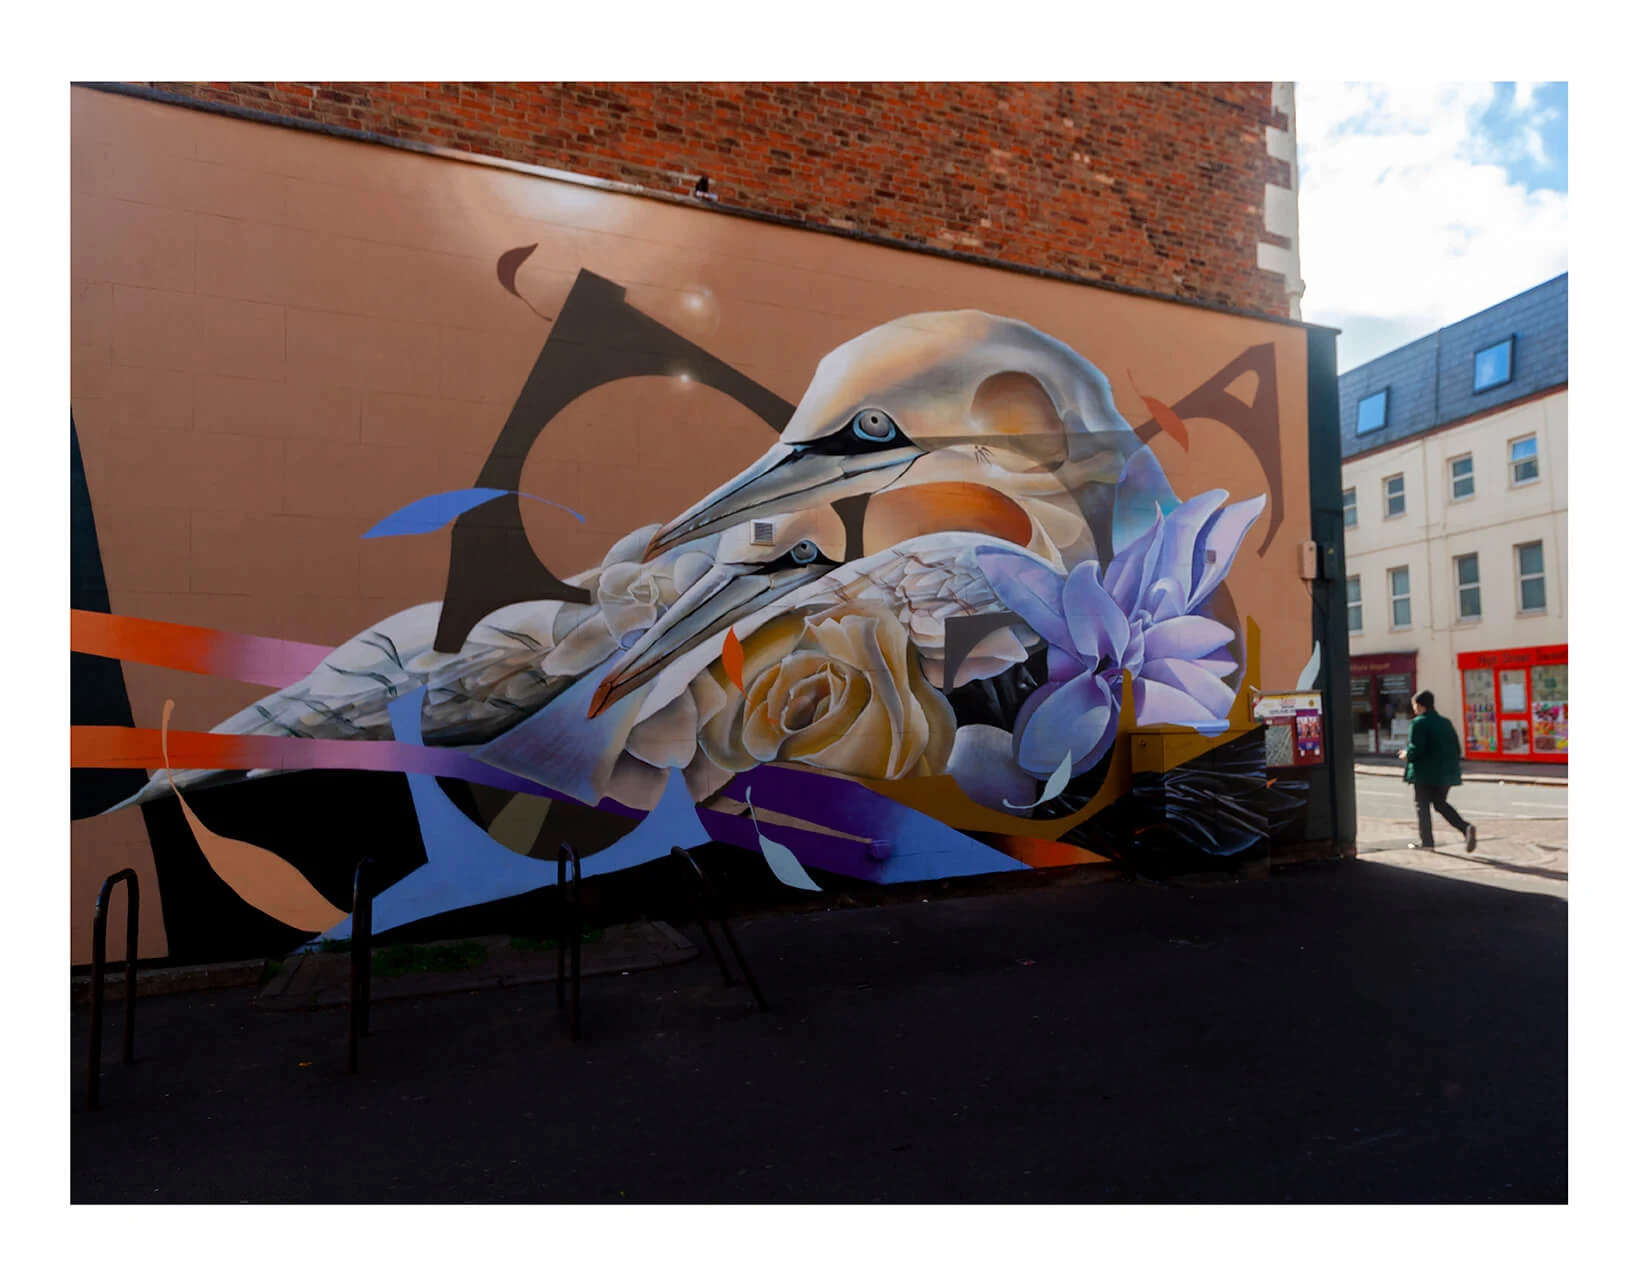 UK street artist Curtis Hylton's mural painted in Cheltenham, UK